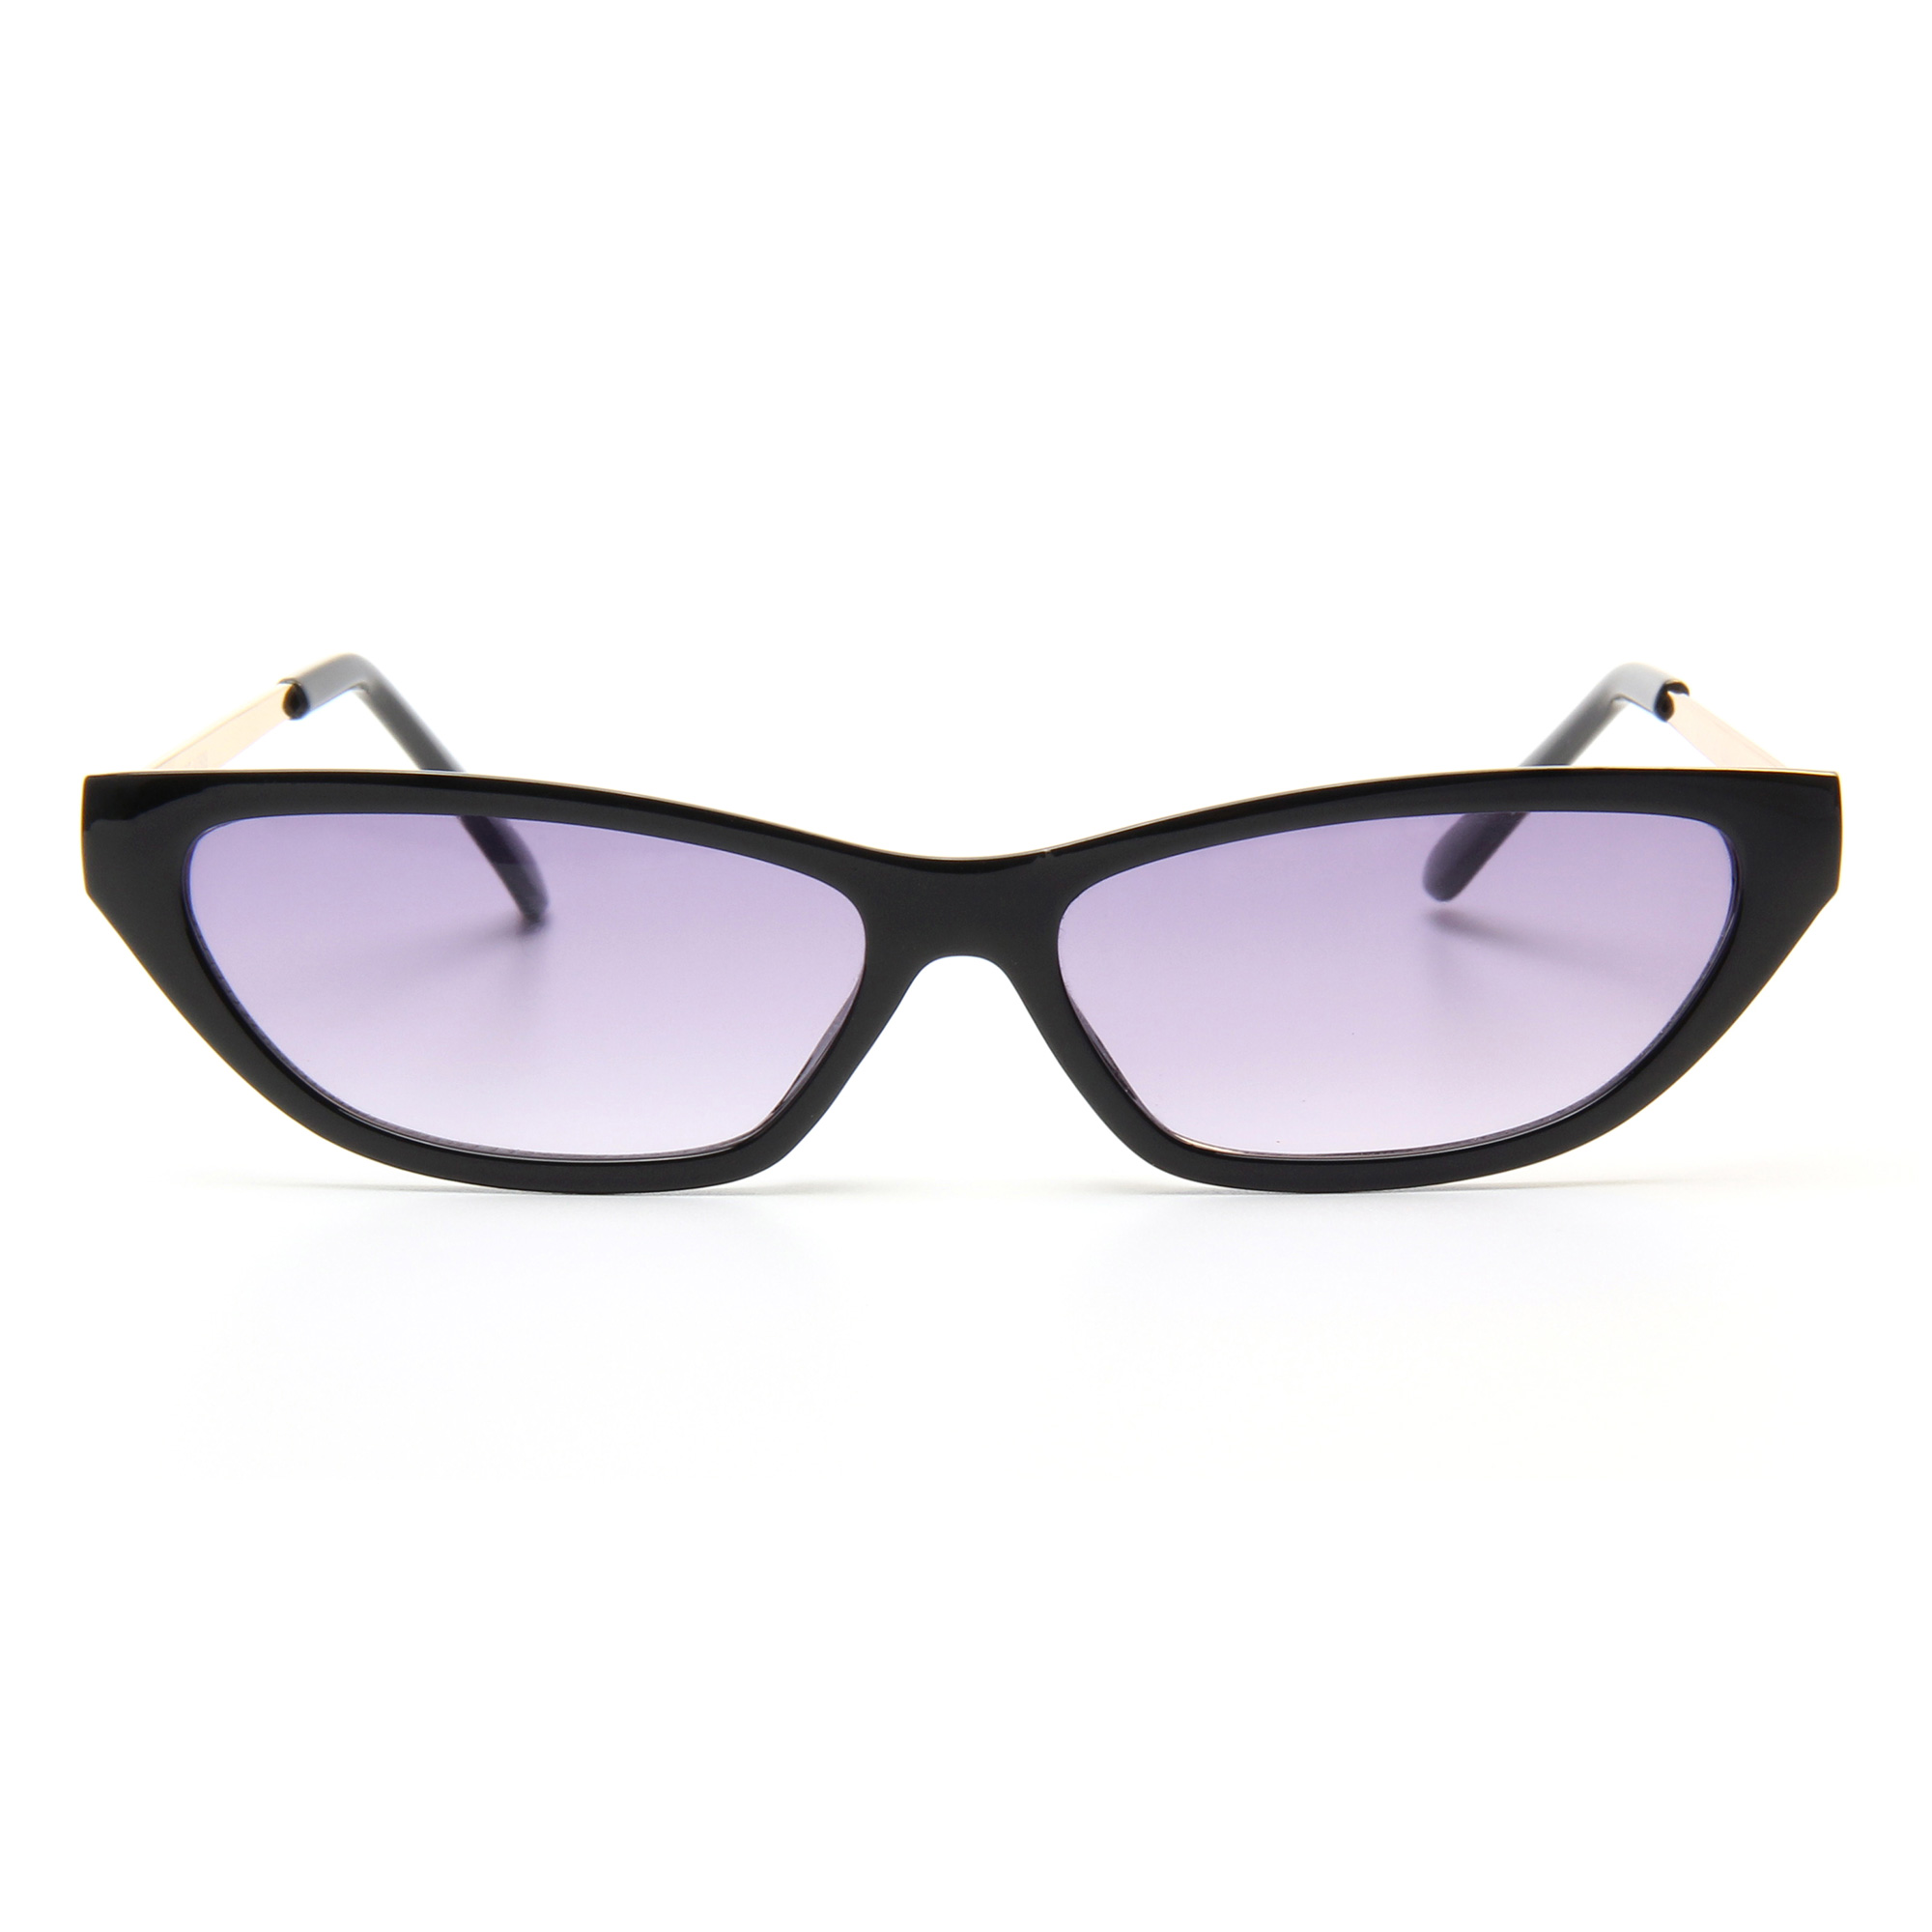 fine quality bulk womens sunglasses elegant for women-2